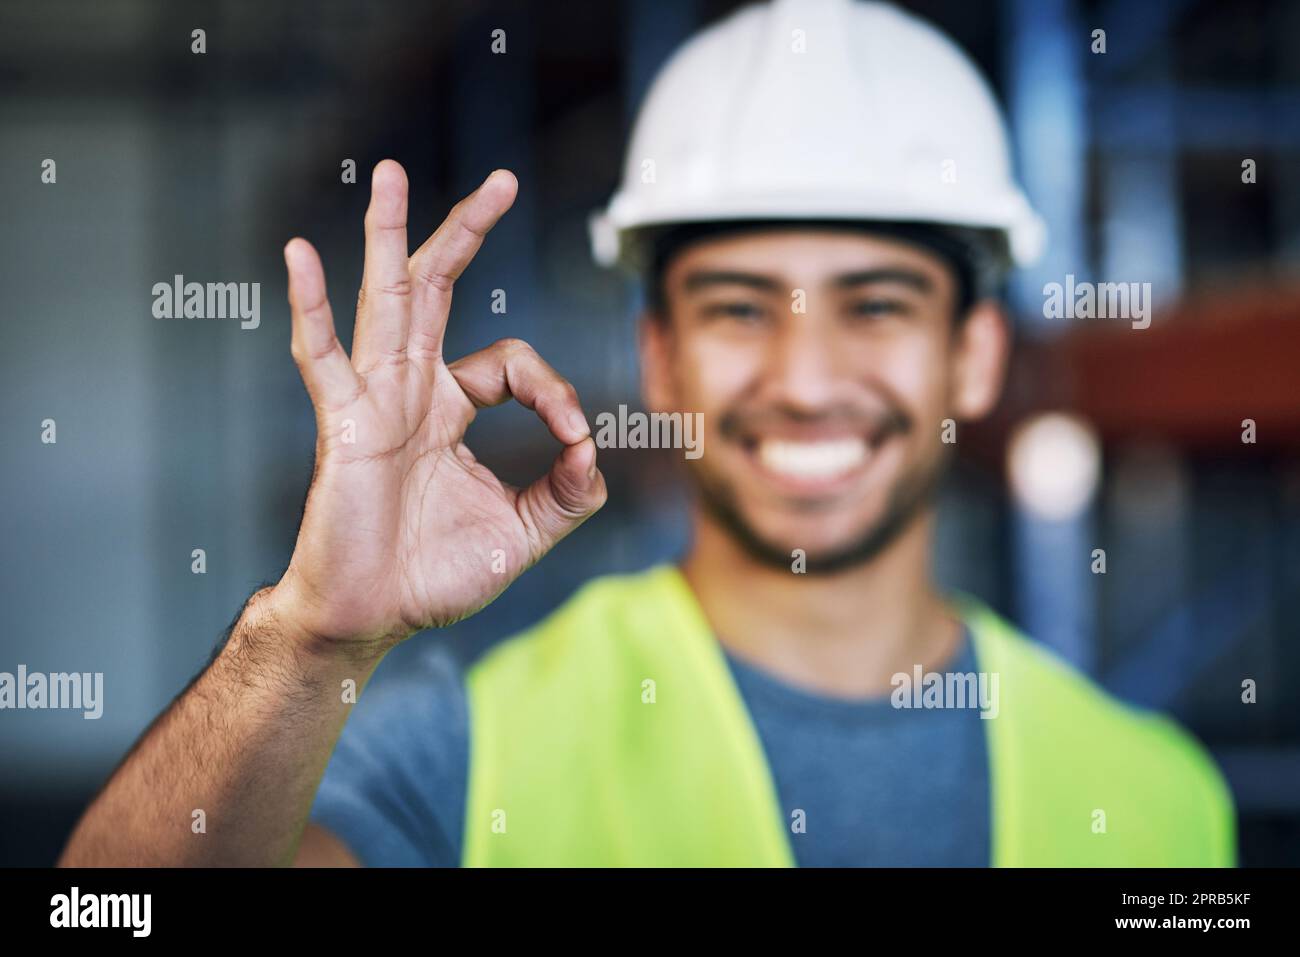 Wurden 100 Sicherheitsbestimmungen erfüllt. Porträt eines jungen Mannes, der auf einer Baustelle eine gute Geste zeigt. Stockfoto